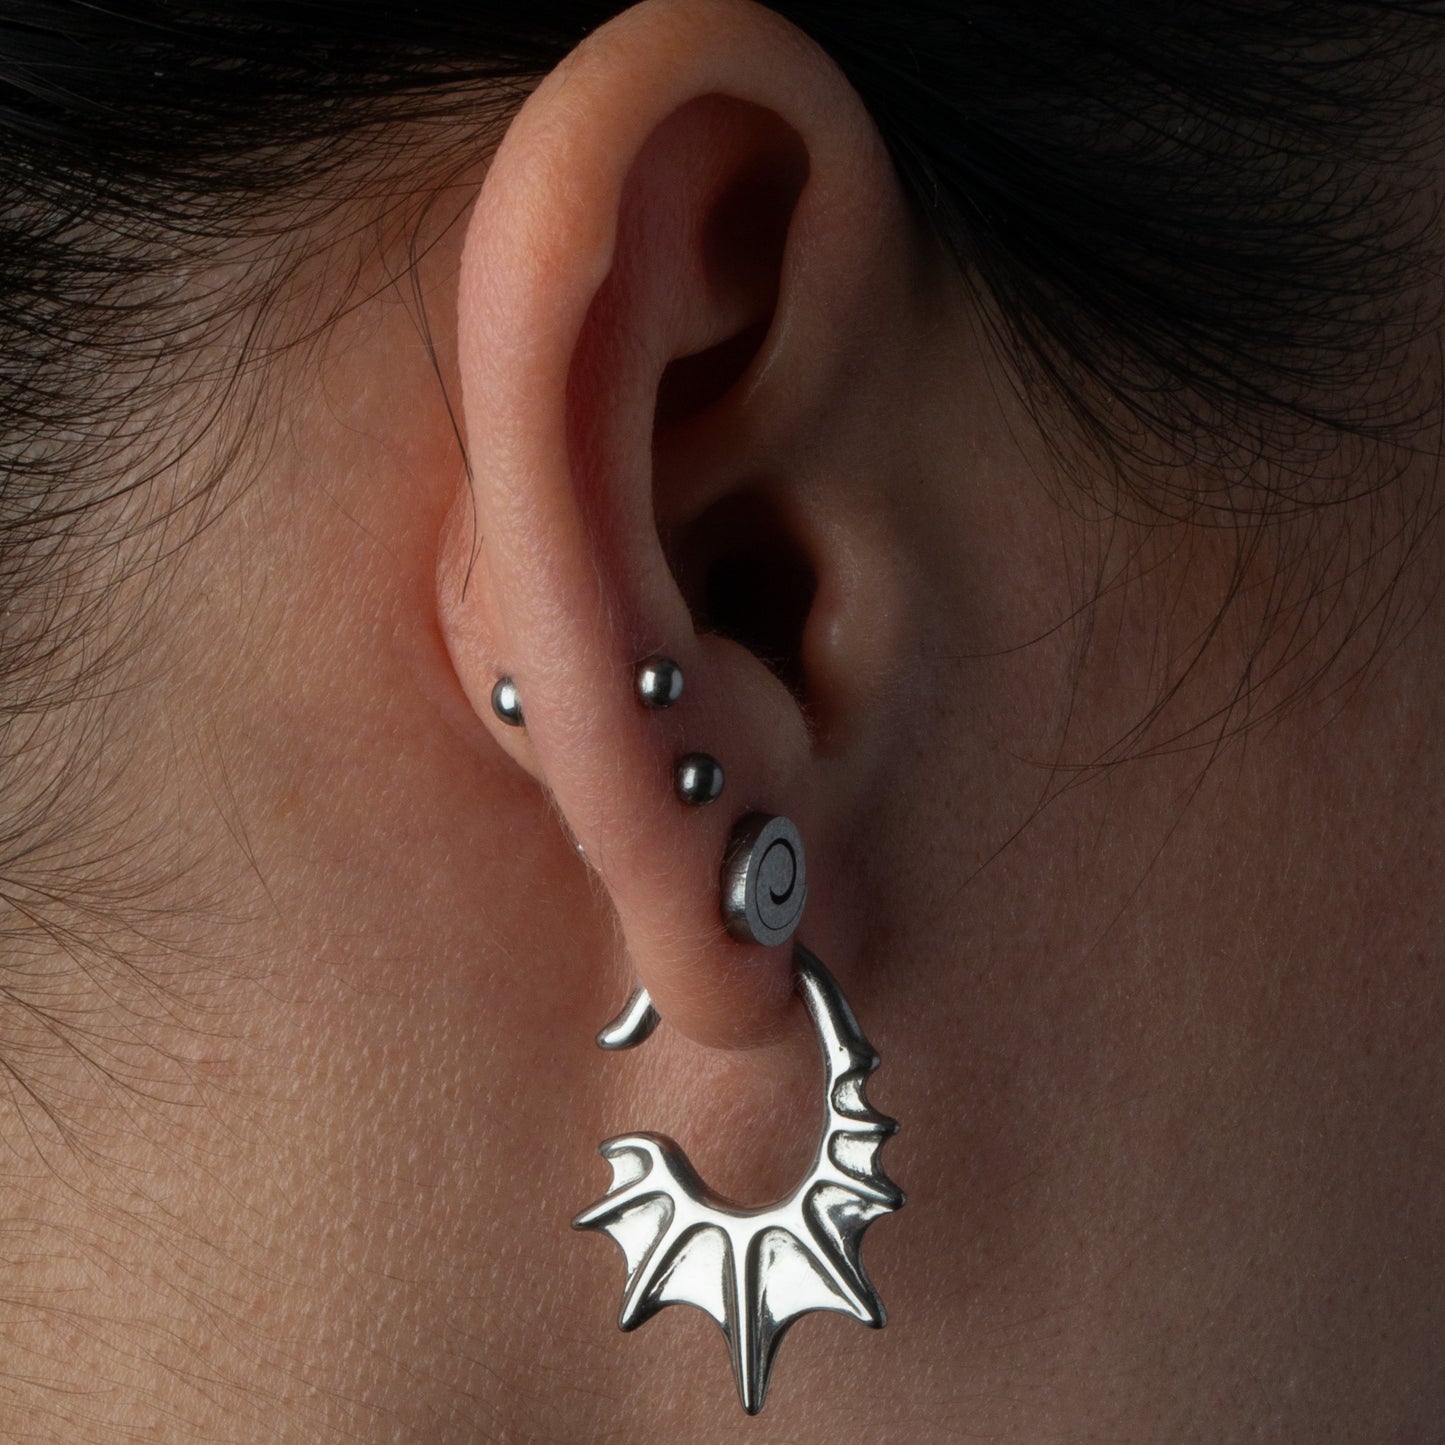 Spiral Stud Earrings - Pair - Stainless Steel